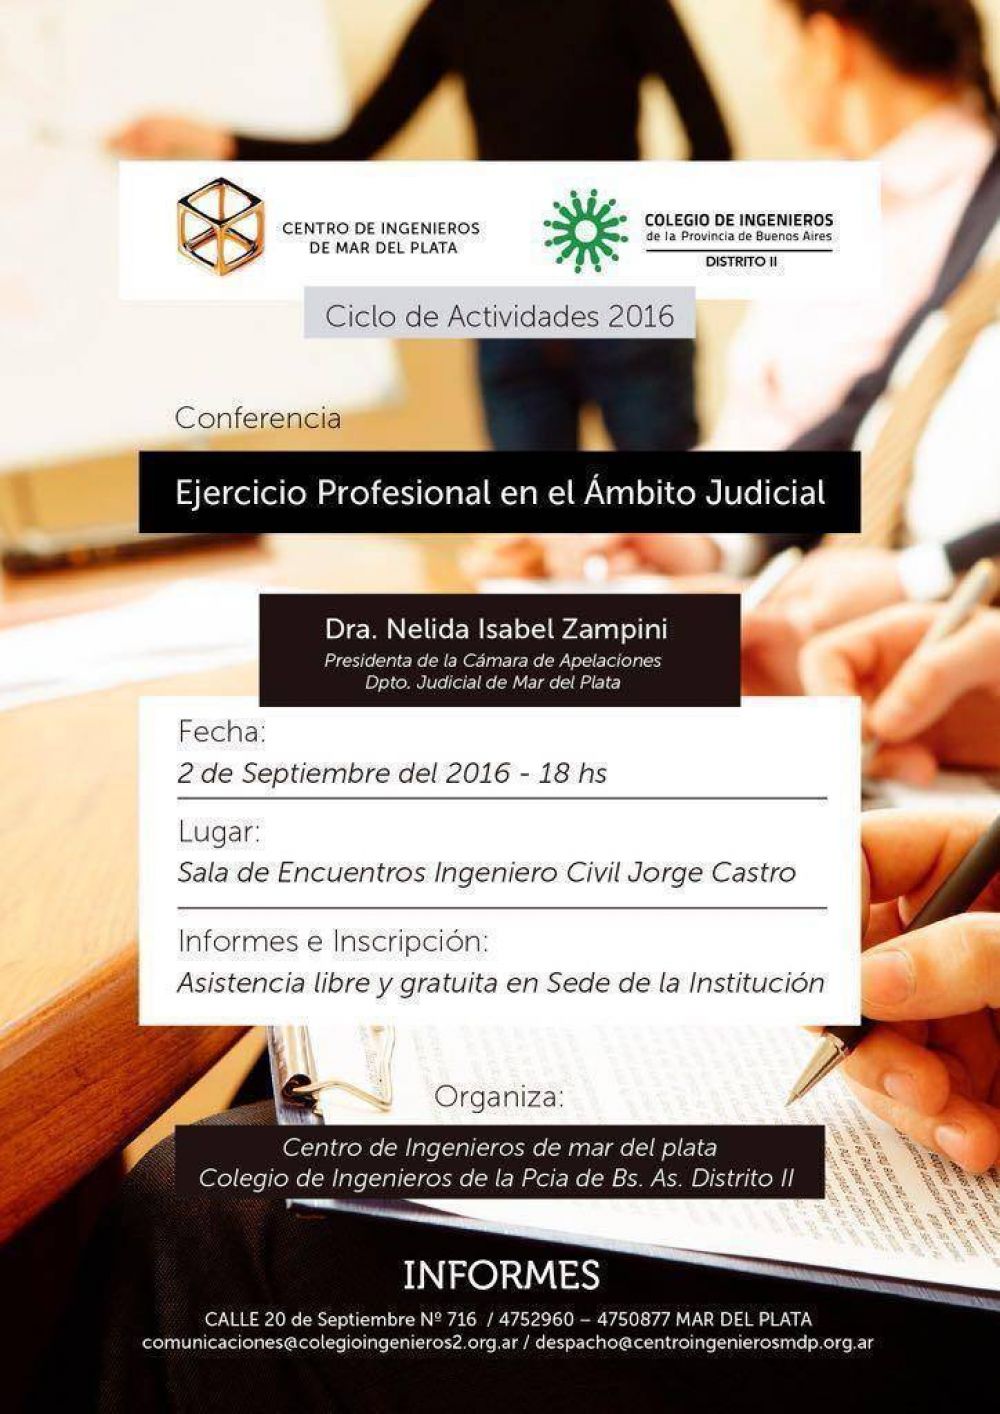 El Colegio de Ingenieros organizar una conferencia sobre el Ejercicio profesional en el mbito judicial